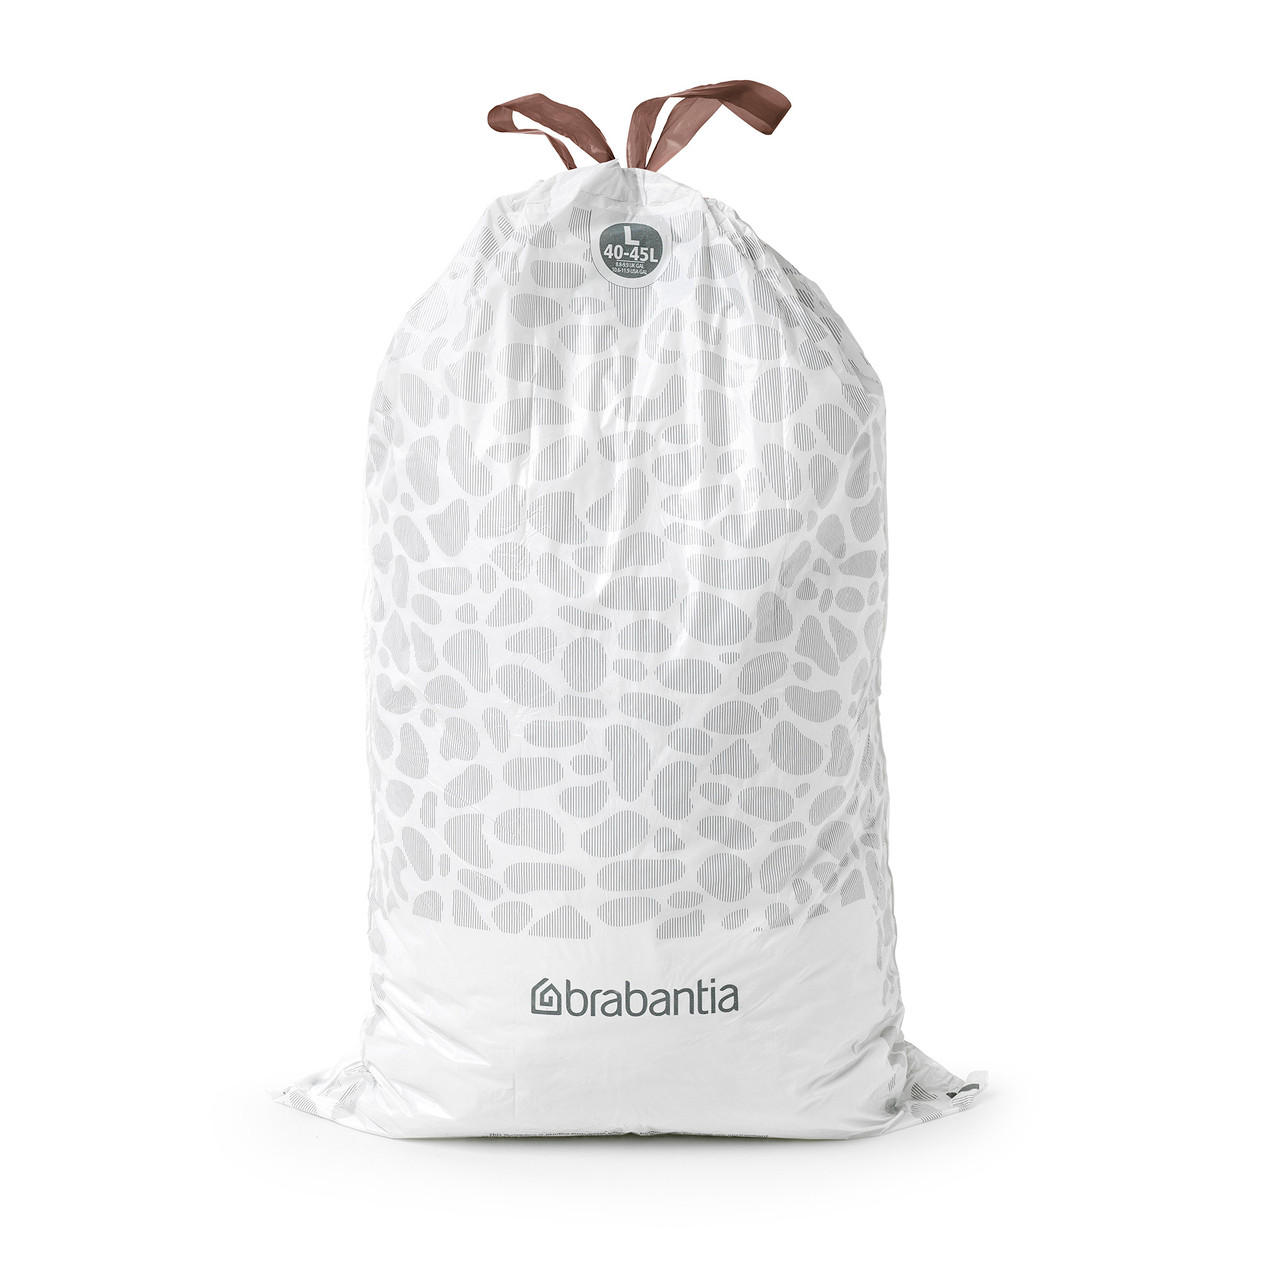 Brabantia Waste Bags Dispenser Pack L, 30 pcs, 40-45 Litre/Size L, White,  Count